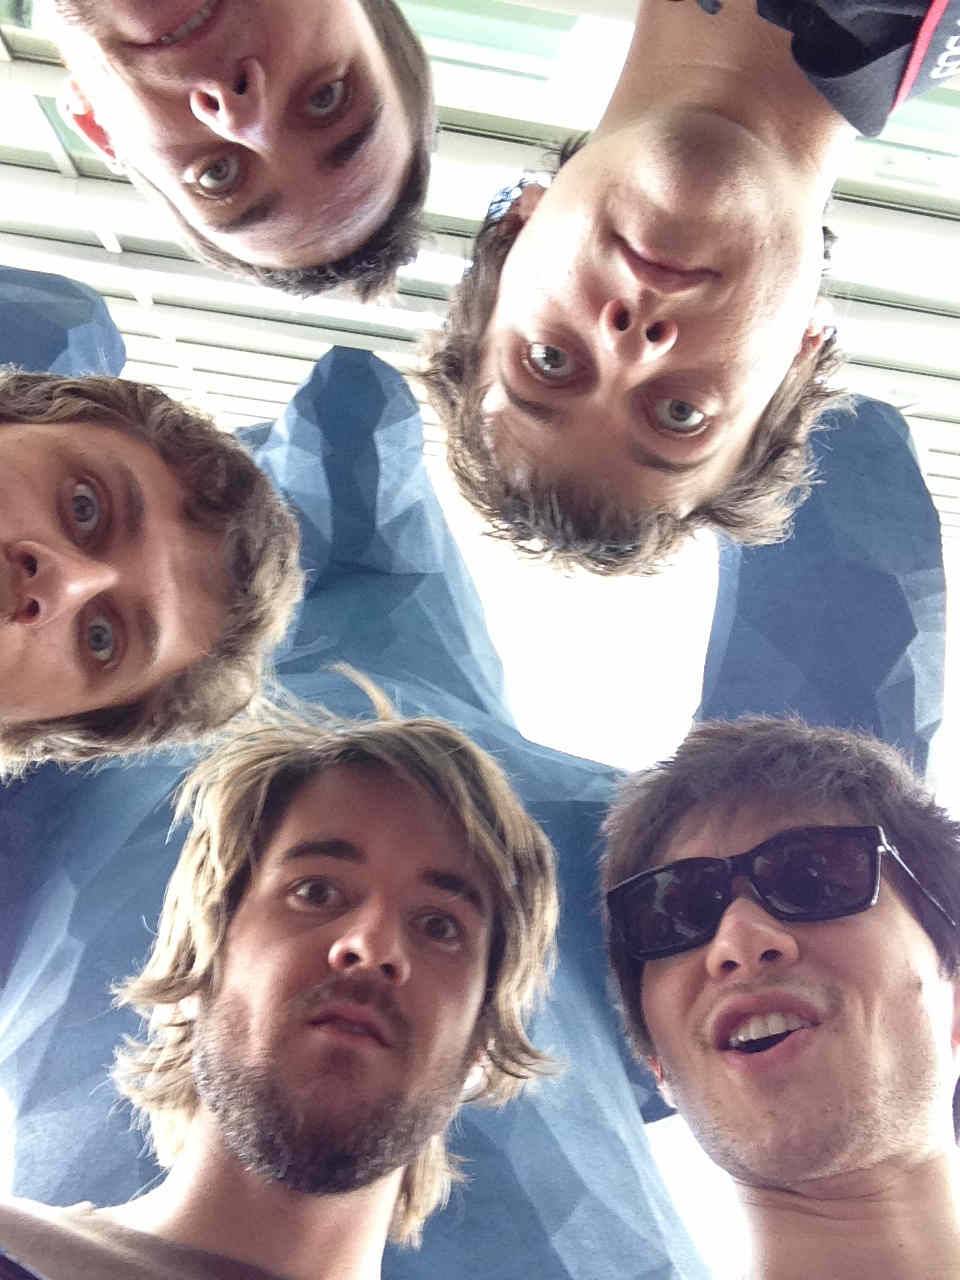 Clockwise selfie from top left: Jared, Richard, Brett, Butcher, Irwin